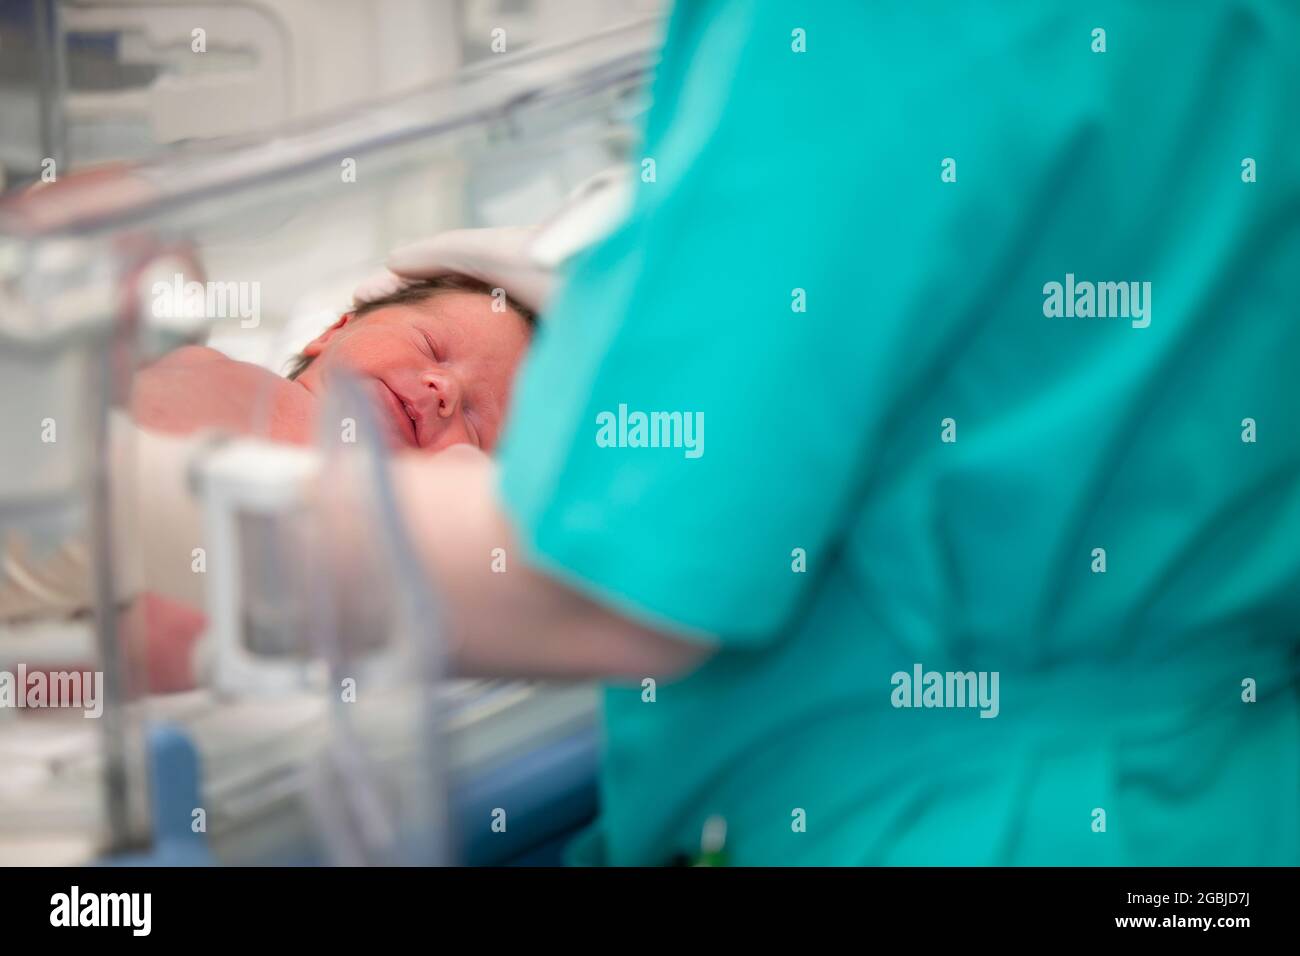 Le mani del medico in guanti di gomma stanno tenendo la testa di un neonato che si trova nella scatola medica. Foto Stock